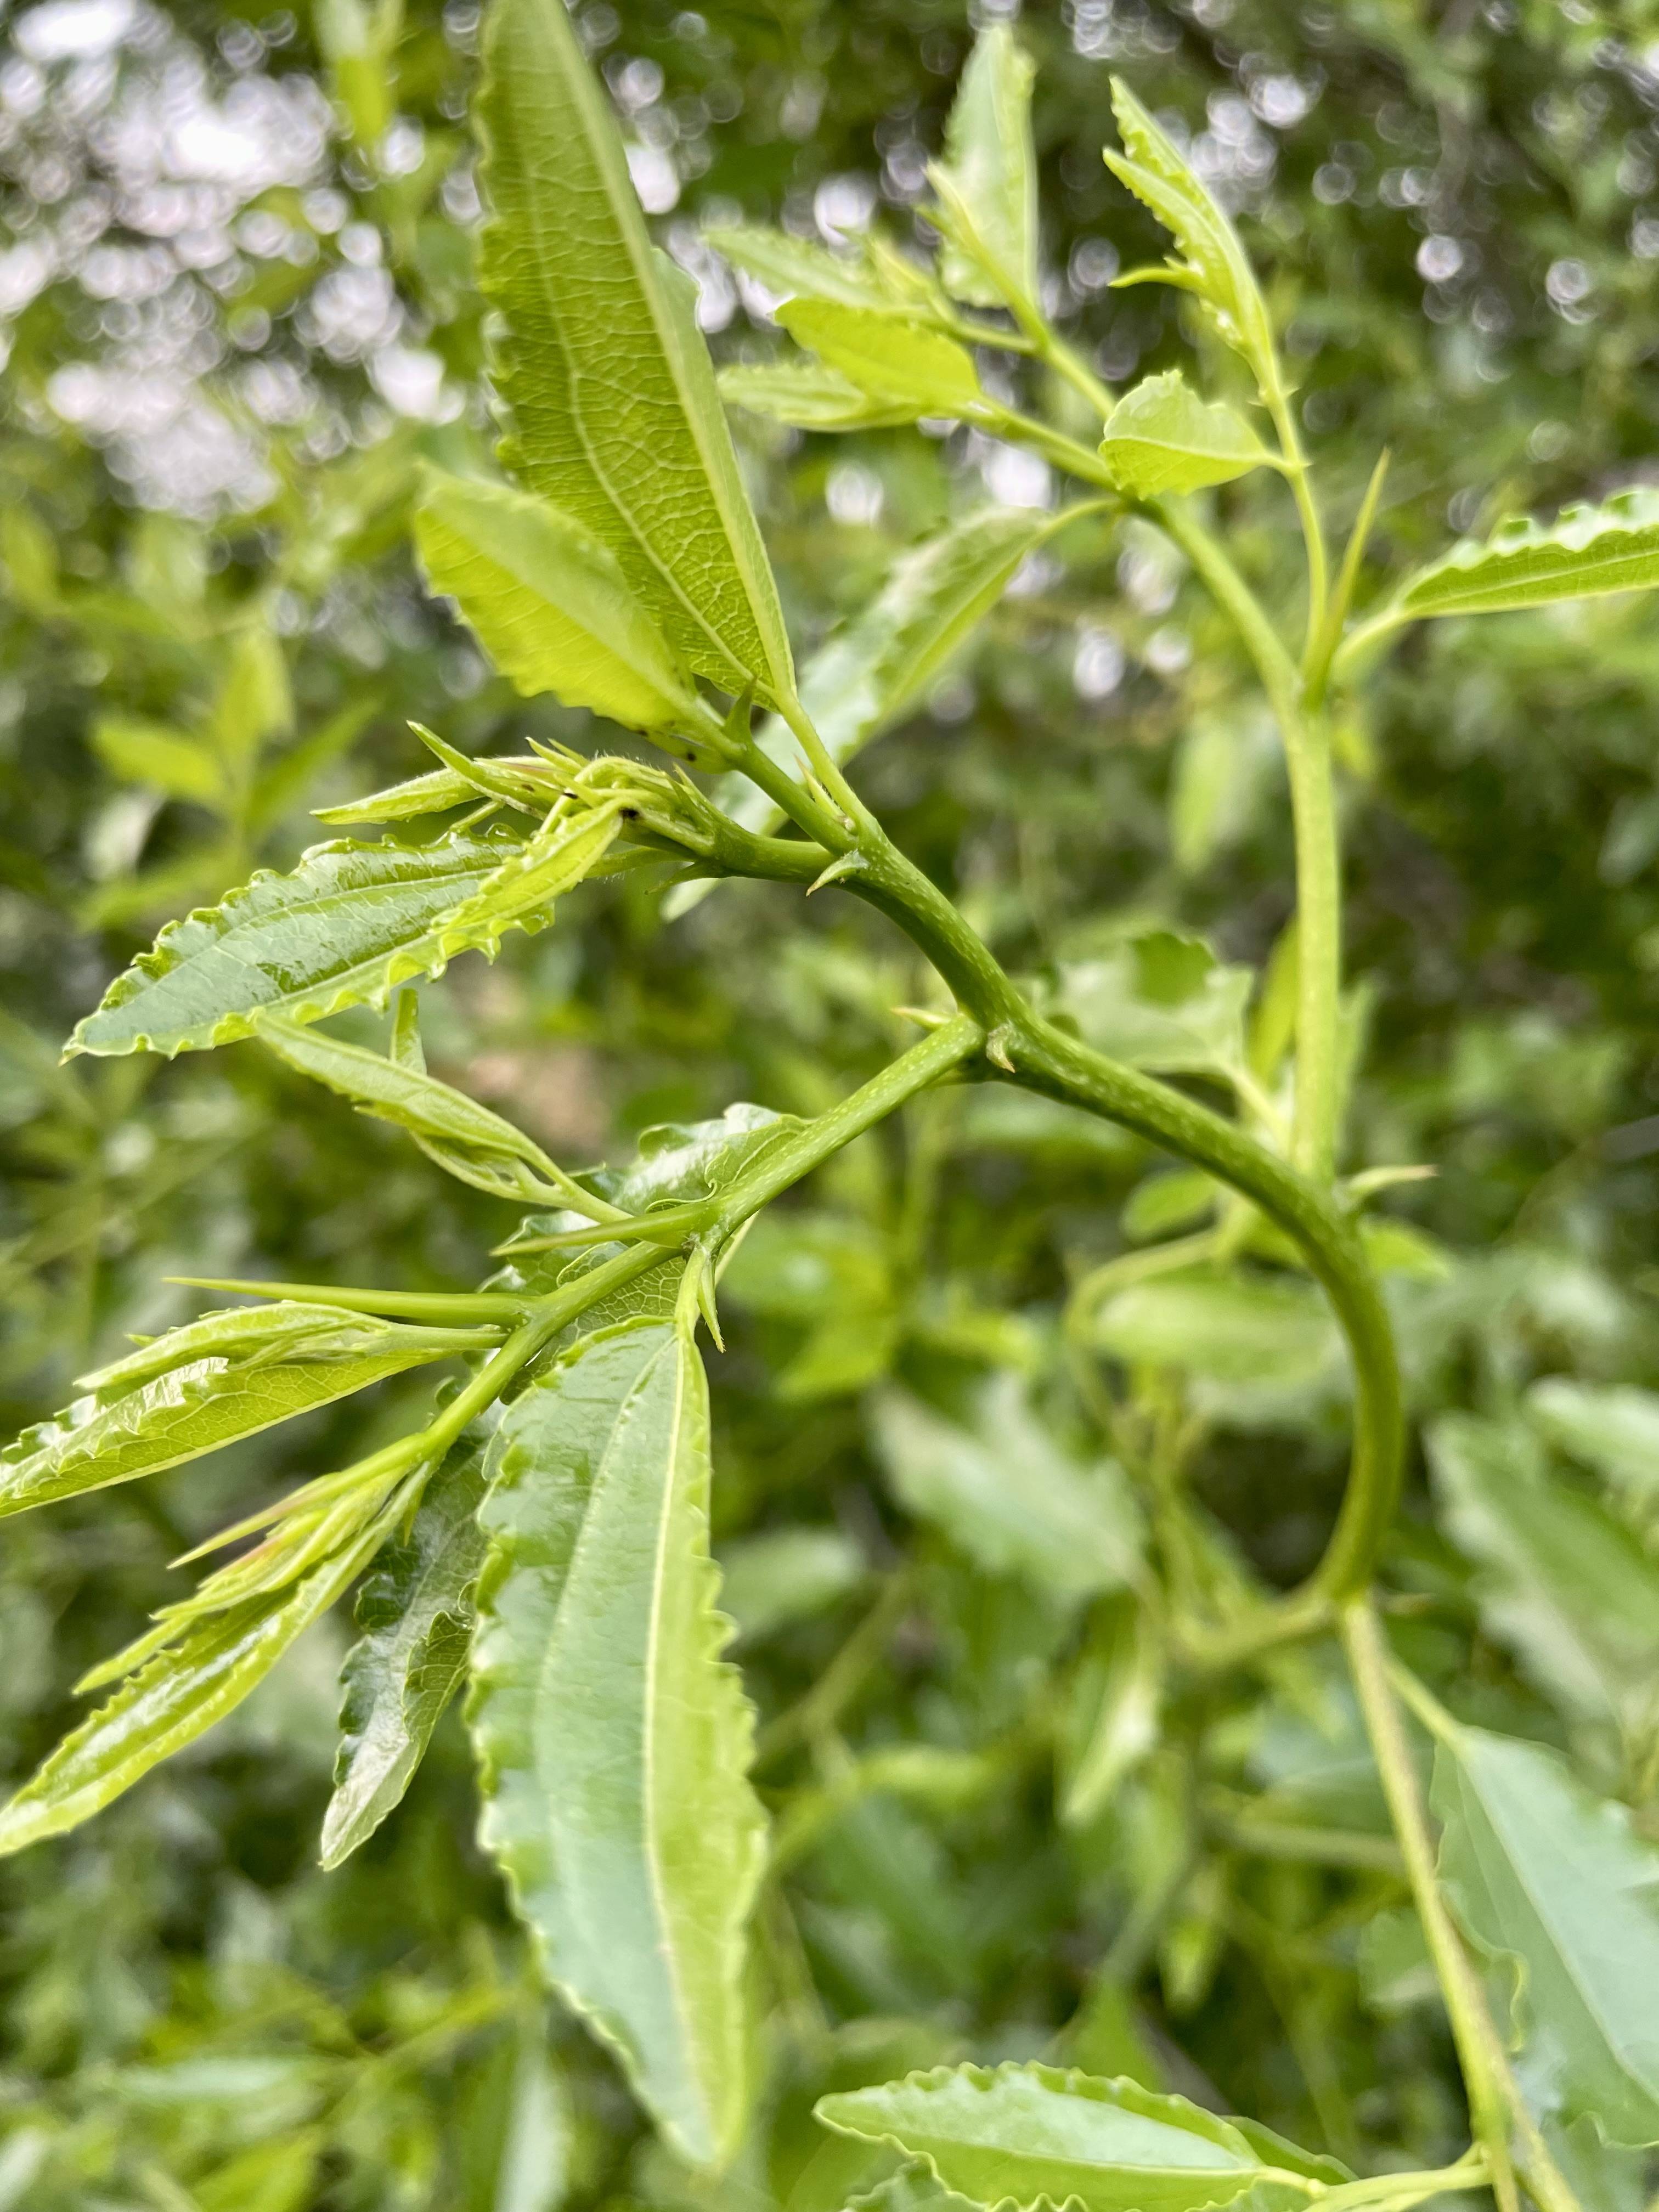 雨中酸枣树:响堂湾石头村嫩嫩的酸枣芽又开始生长